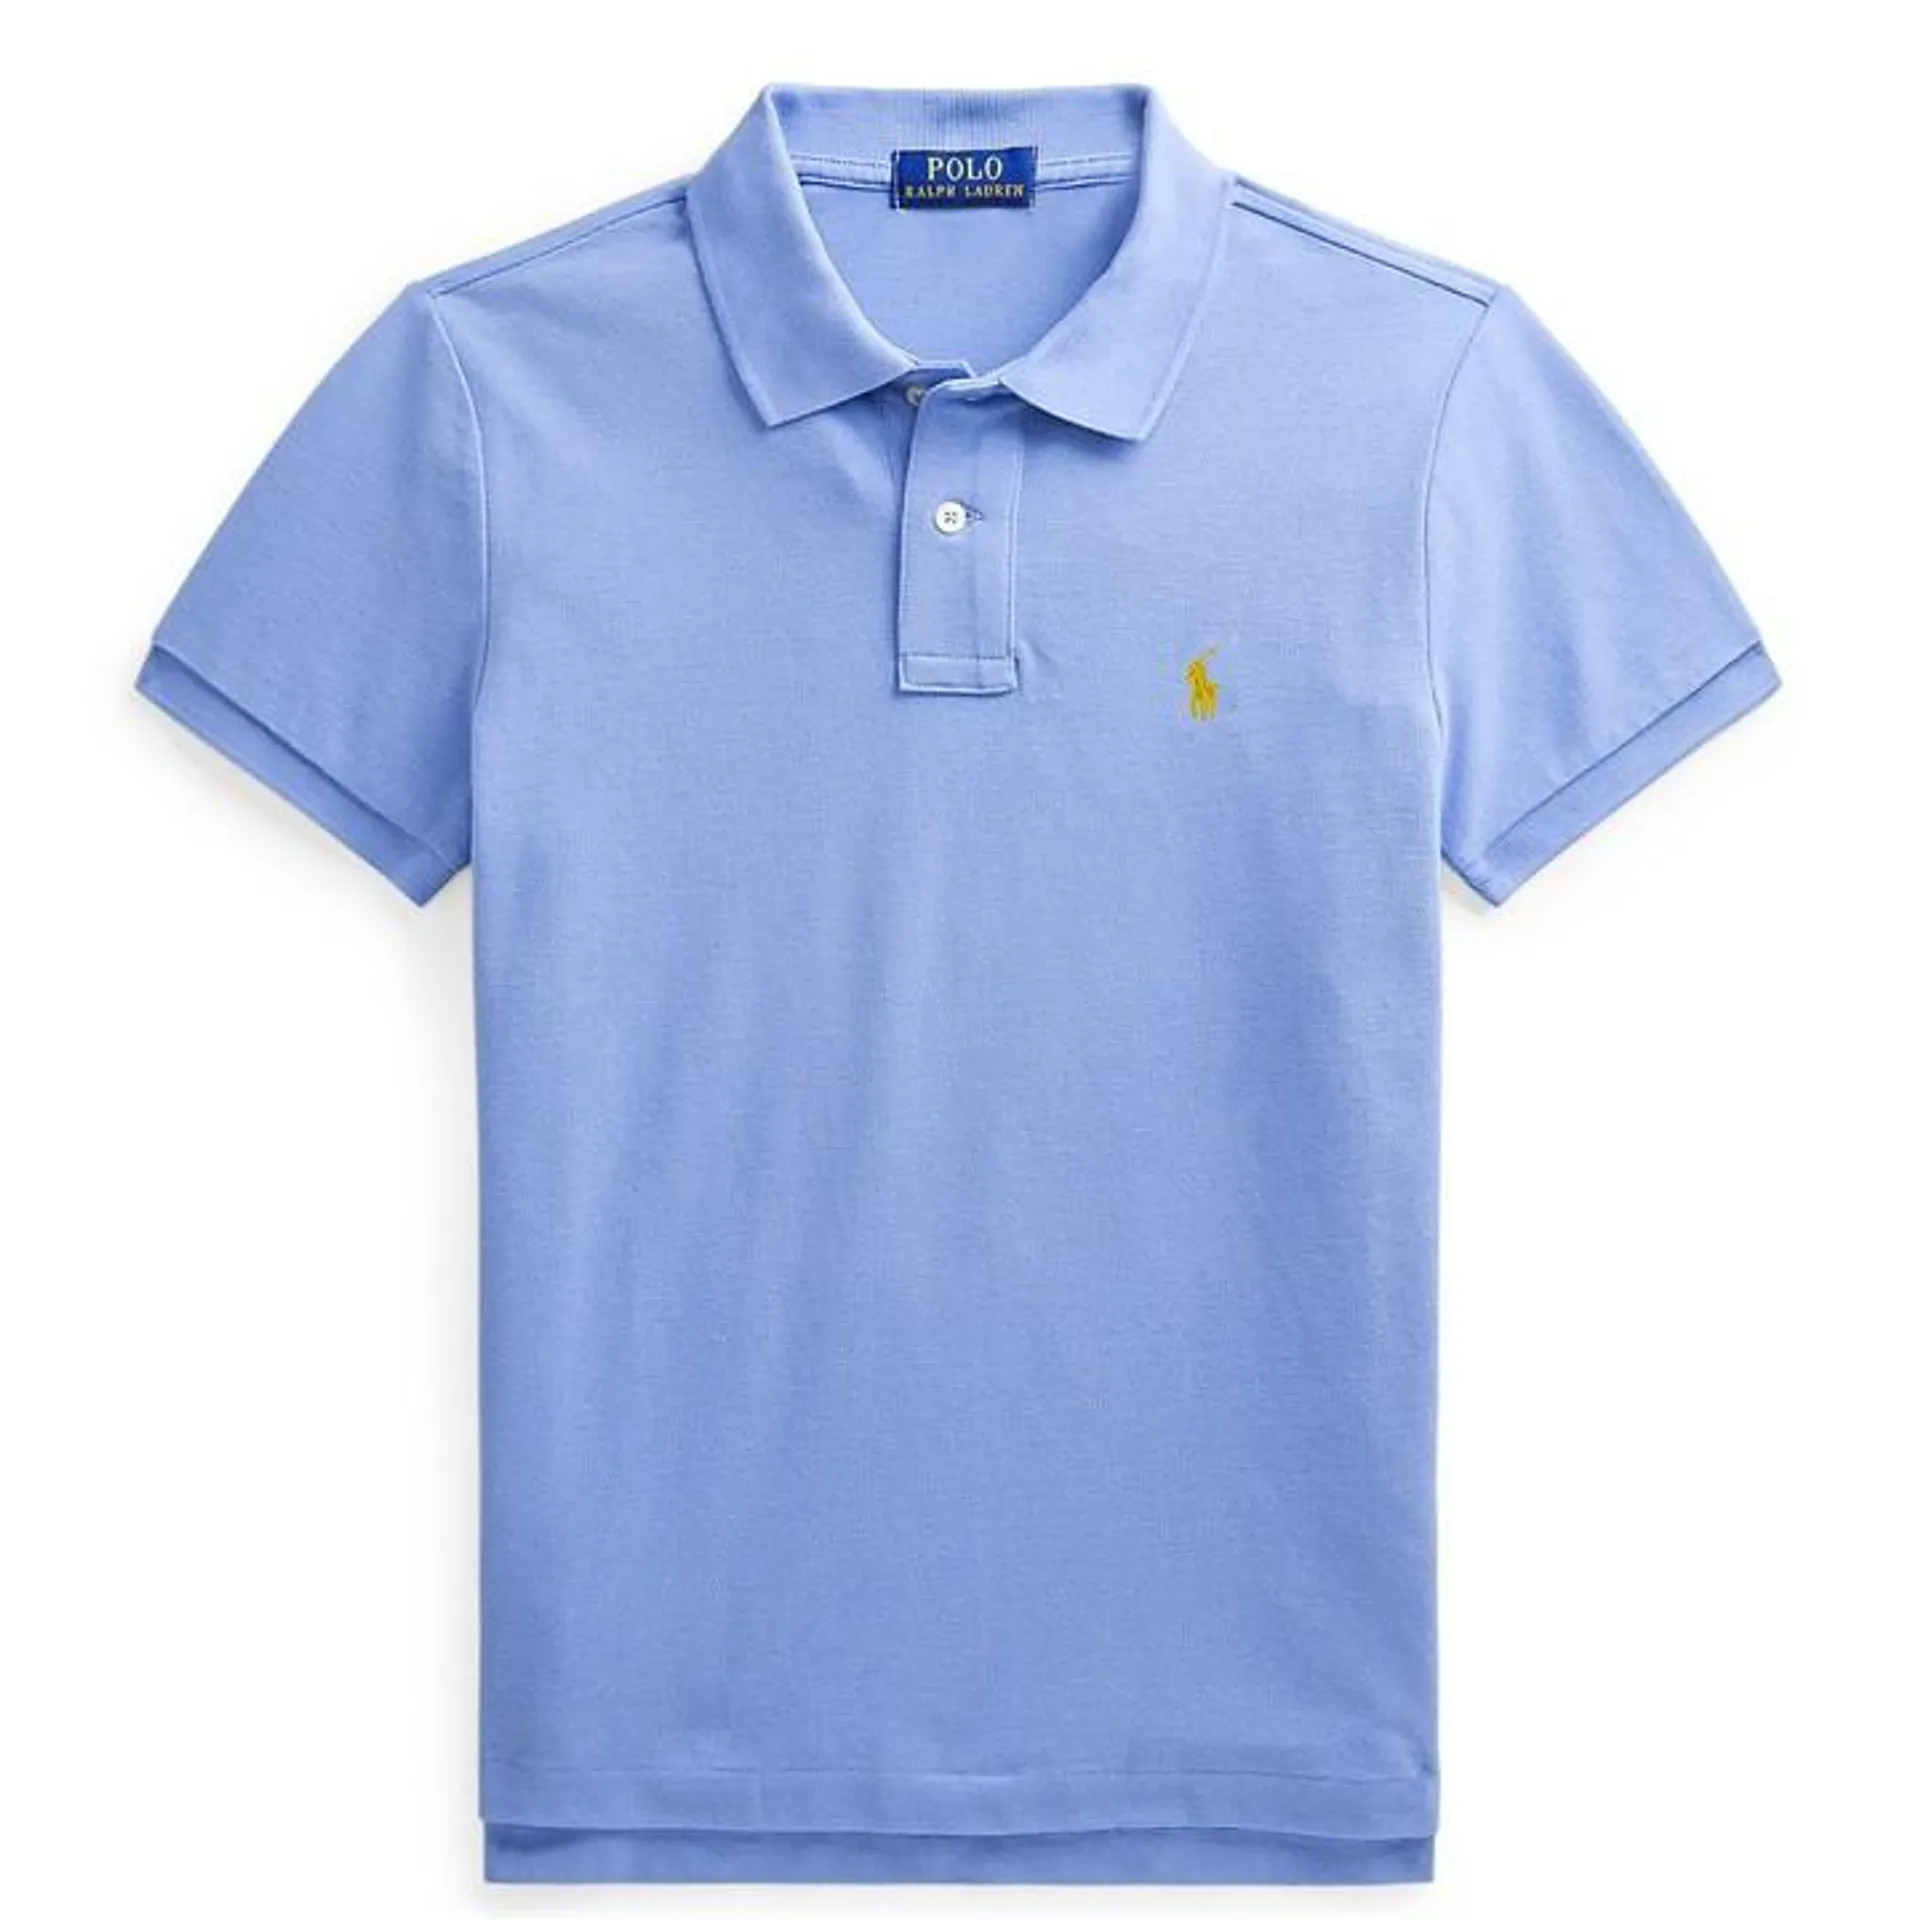 Junior Boys Custom Short Sleeve Polo Shirt